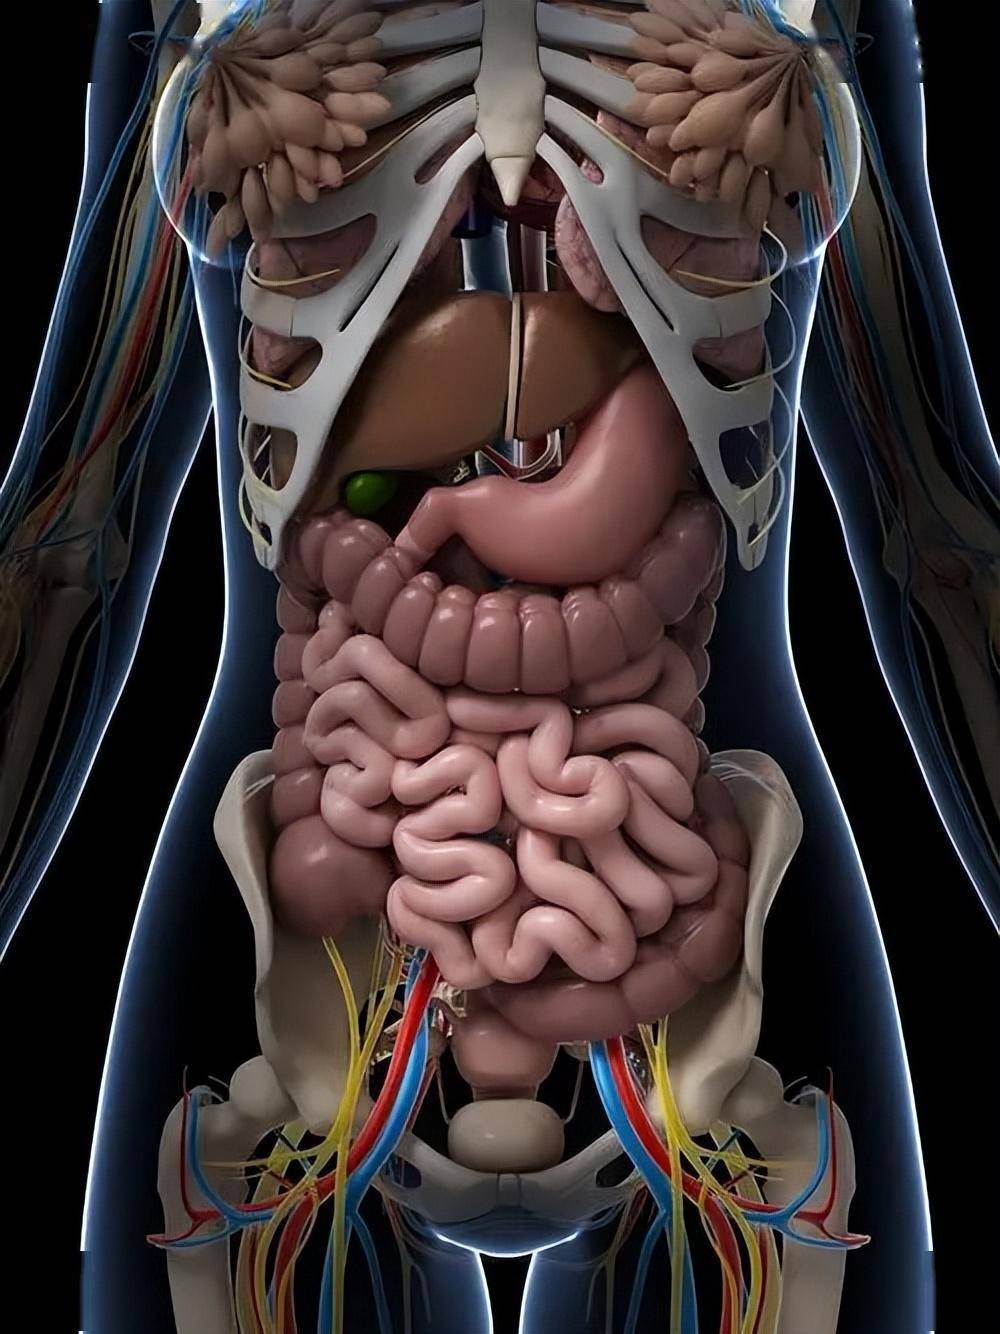 胃的位置图 女生图片